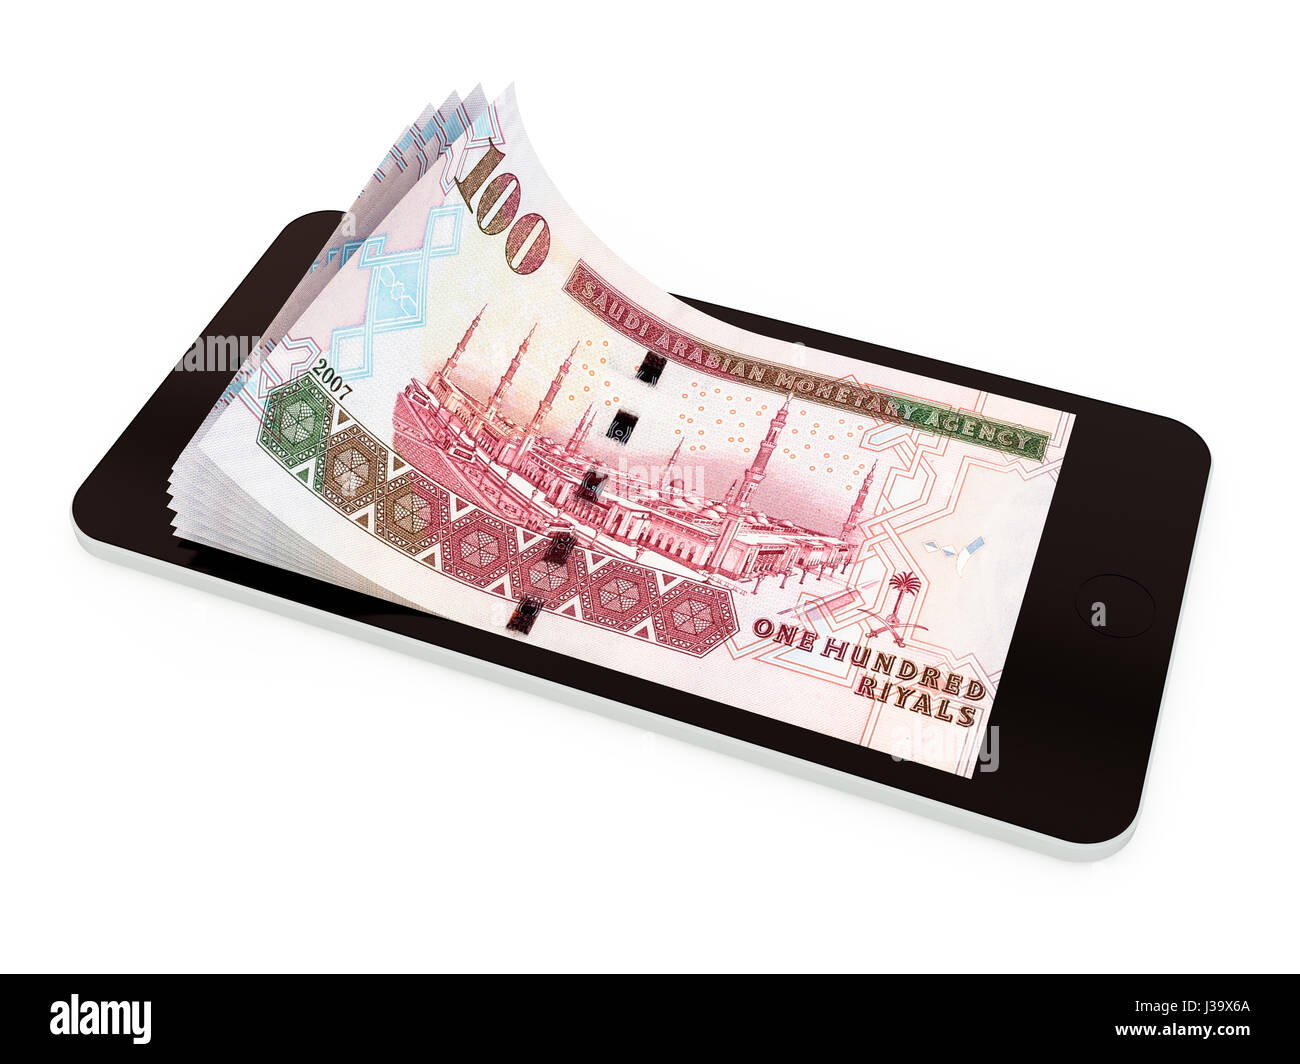 Paiement Mobile, transfert d'argent avec smart phone, riyal saoudien. Rendu 3d illustration. Banque D'Images